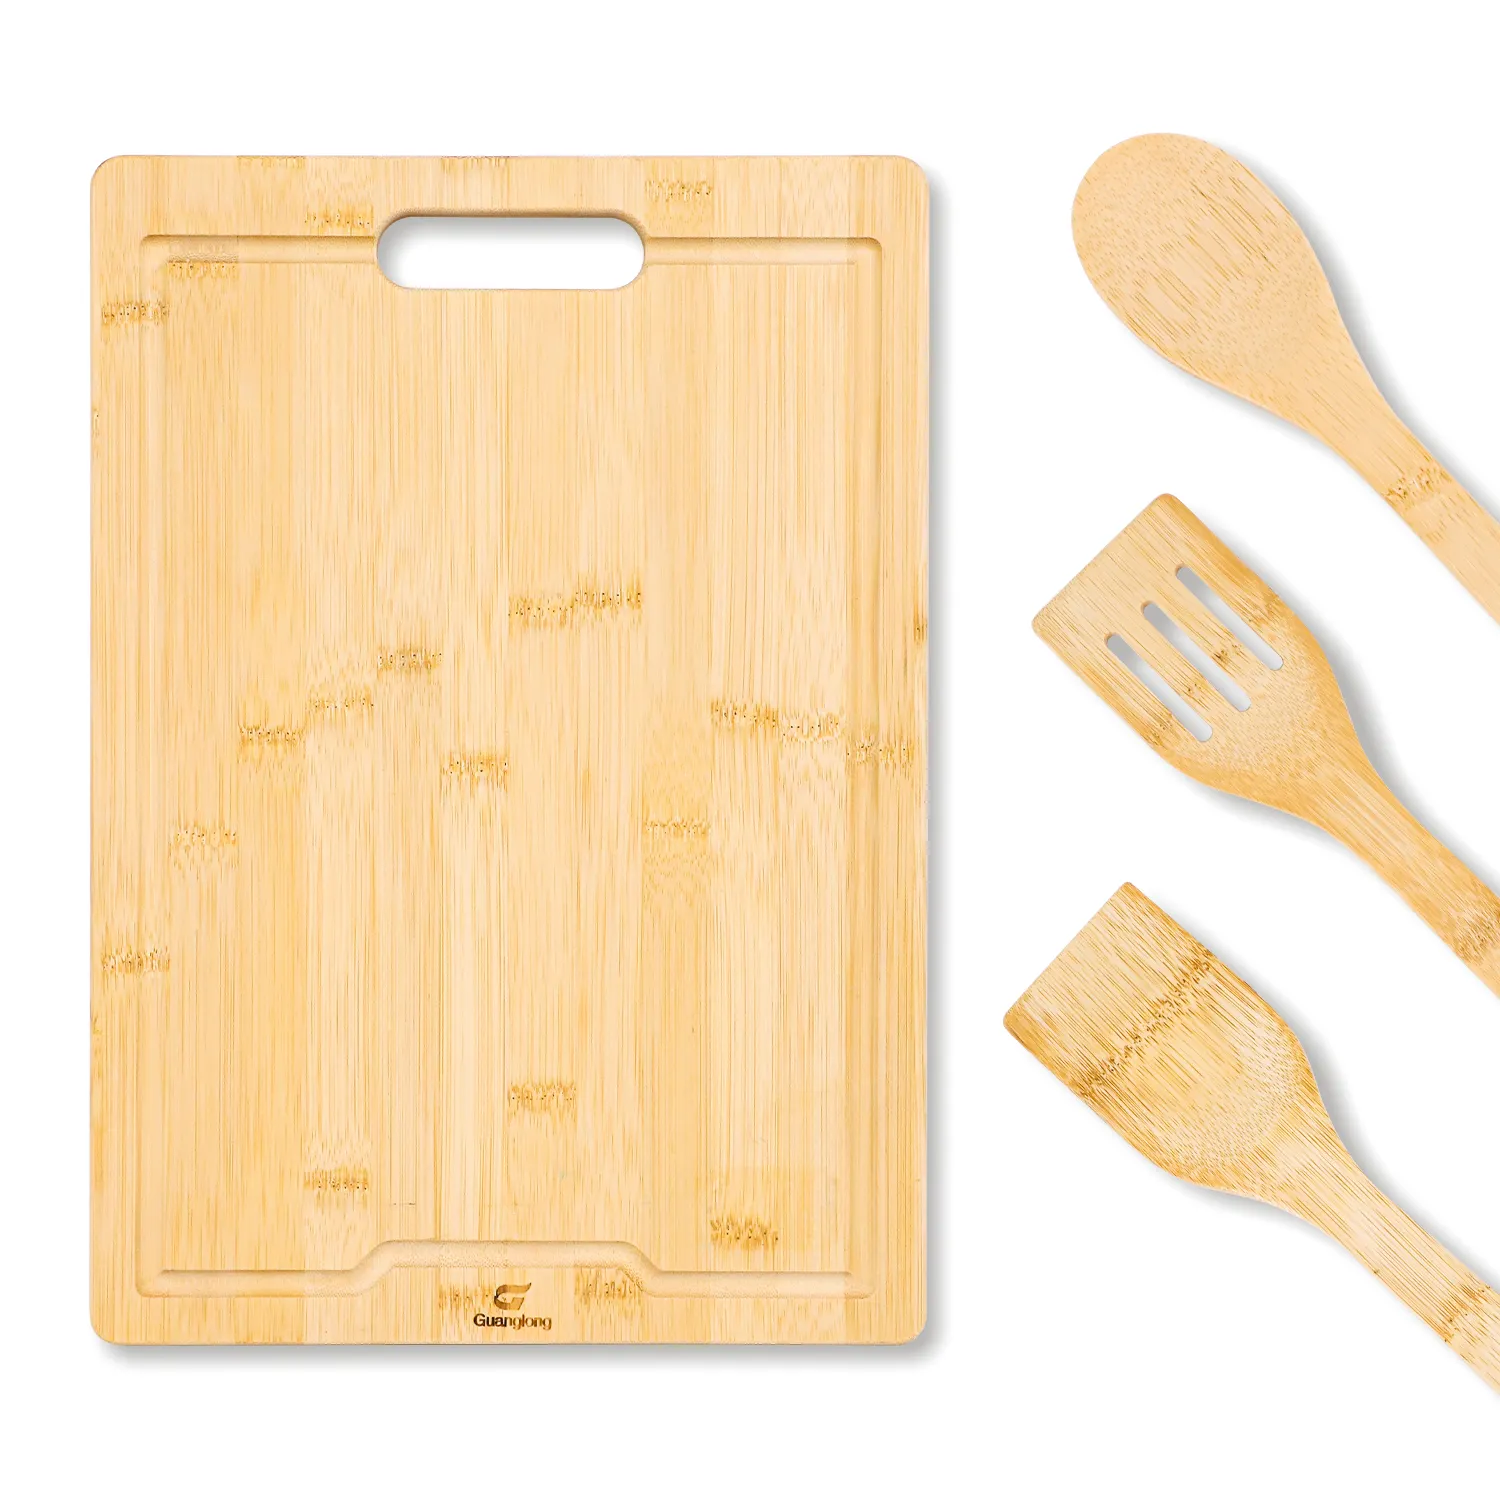 Gll accessori da cucina Set tagliere di bambù tagliere Set con utensile 4 pezzi di bambù utensili da cucina con supporto